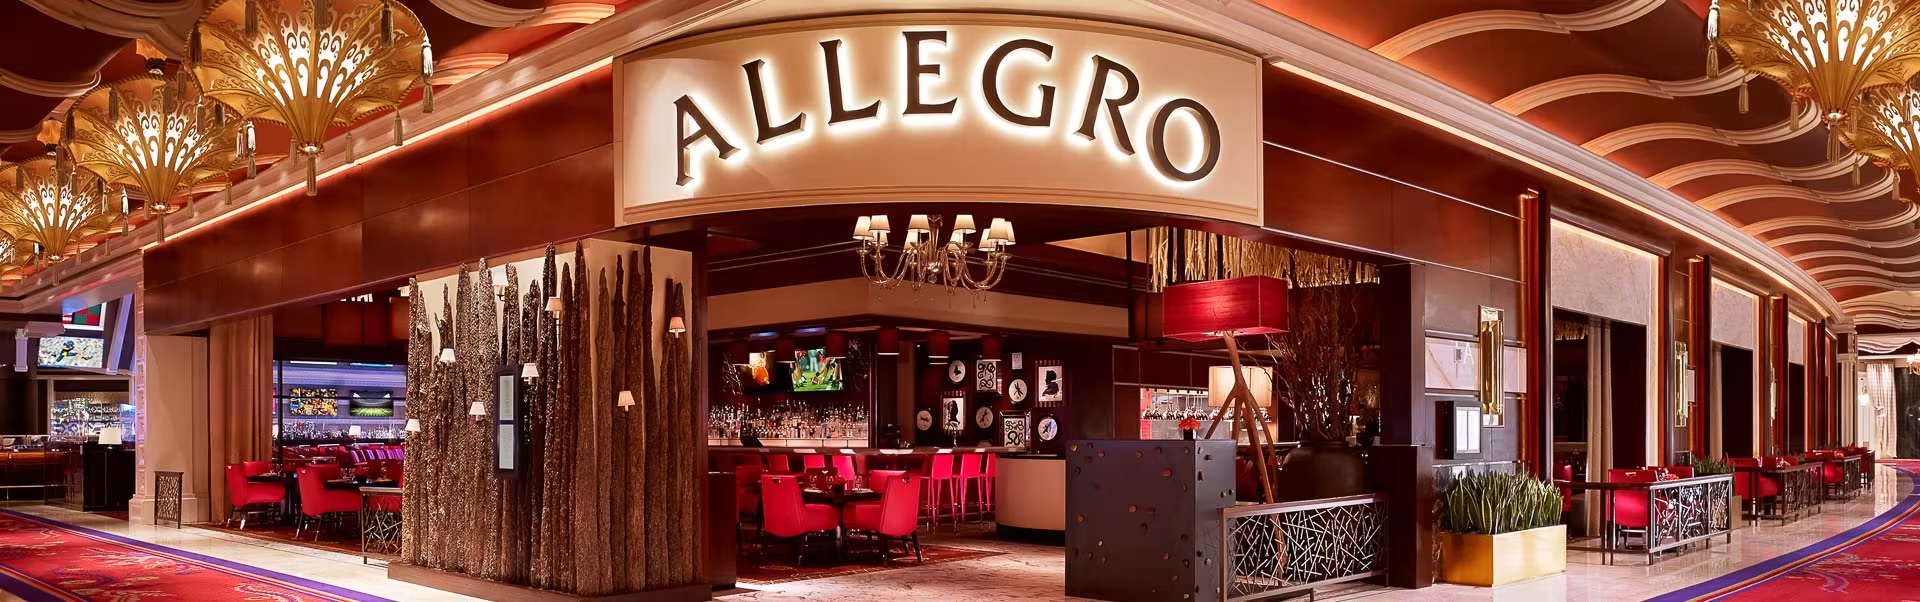 Interior of Allegro